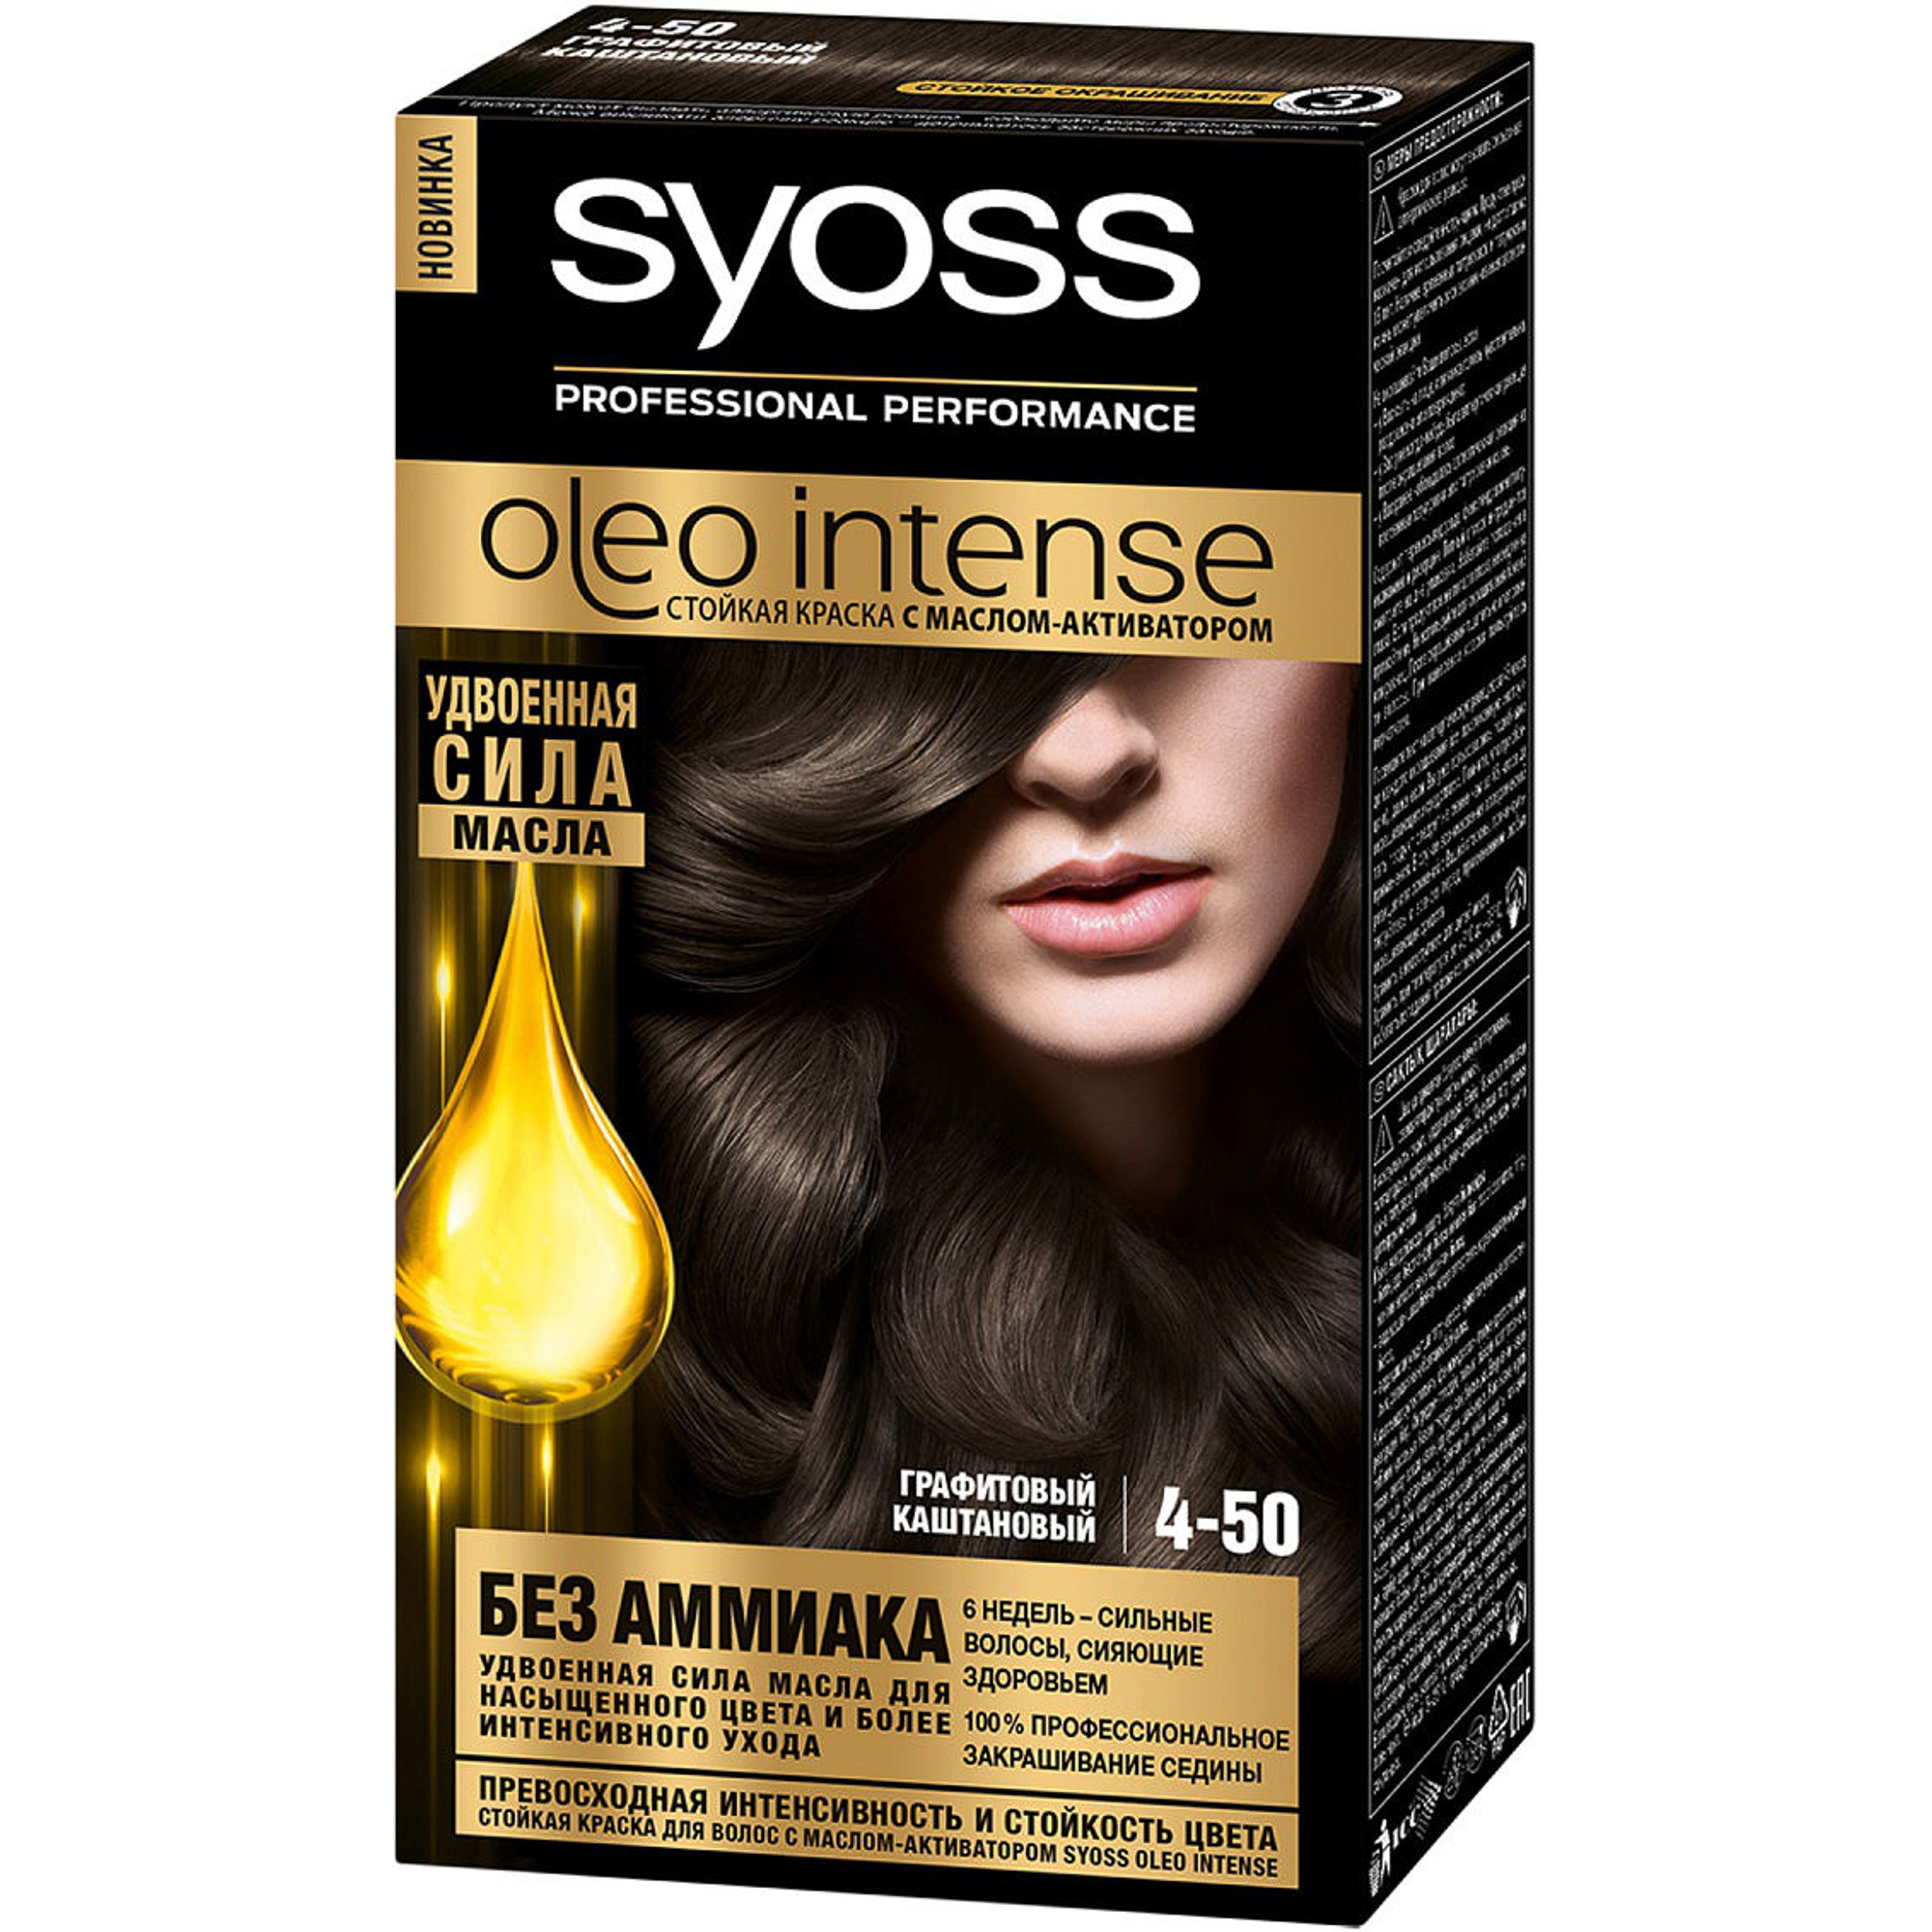 Краска для волос Syoss Oleo Intense 4-50 Графитовый каштановый